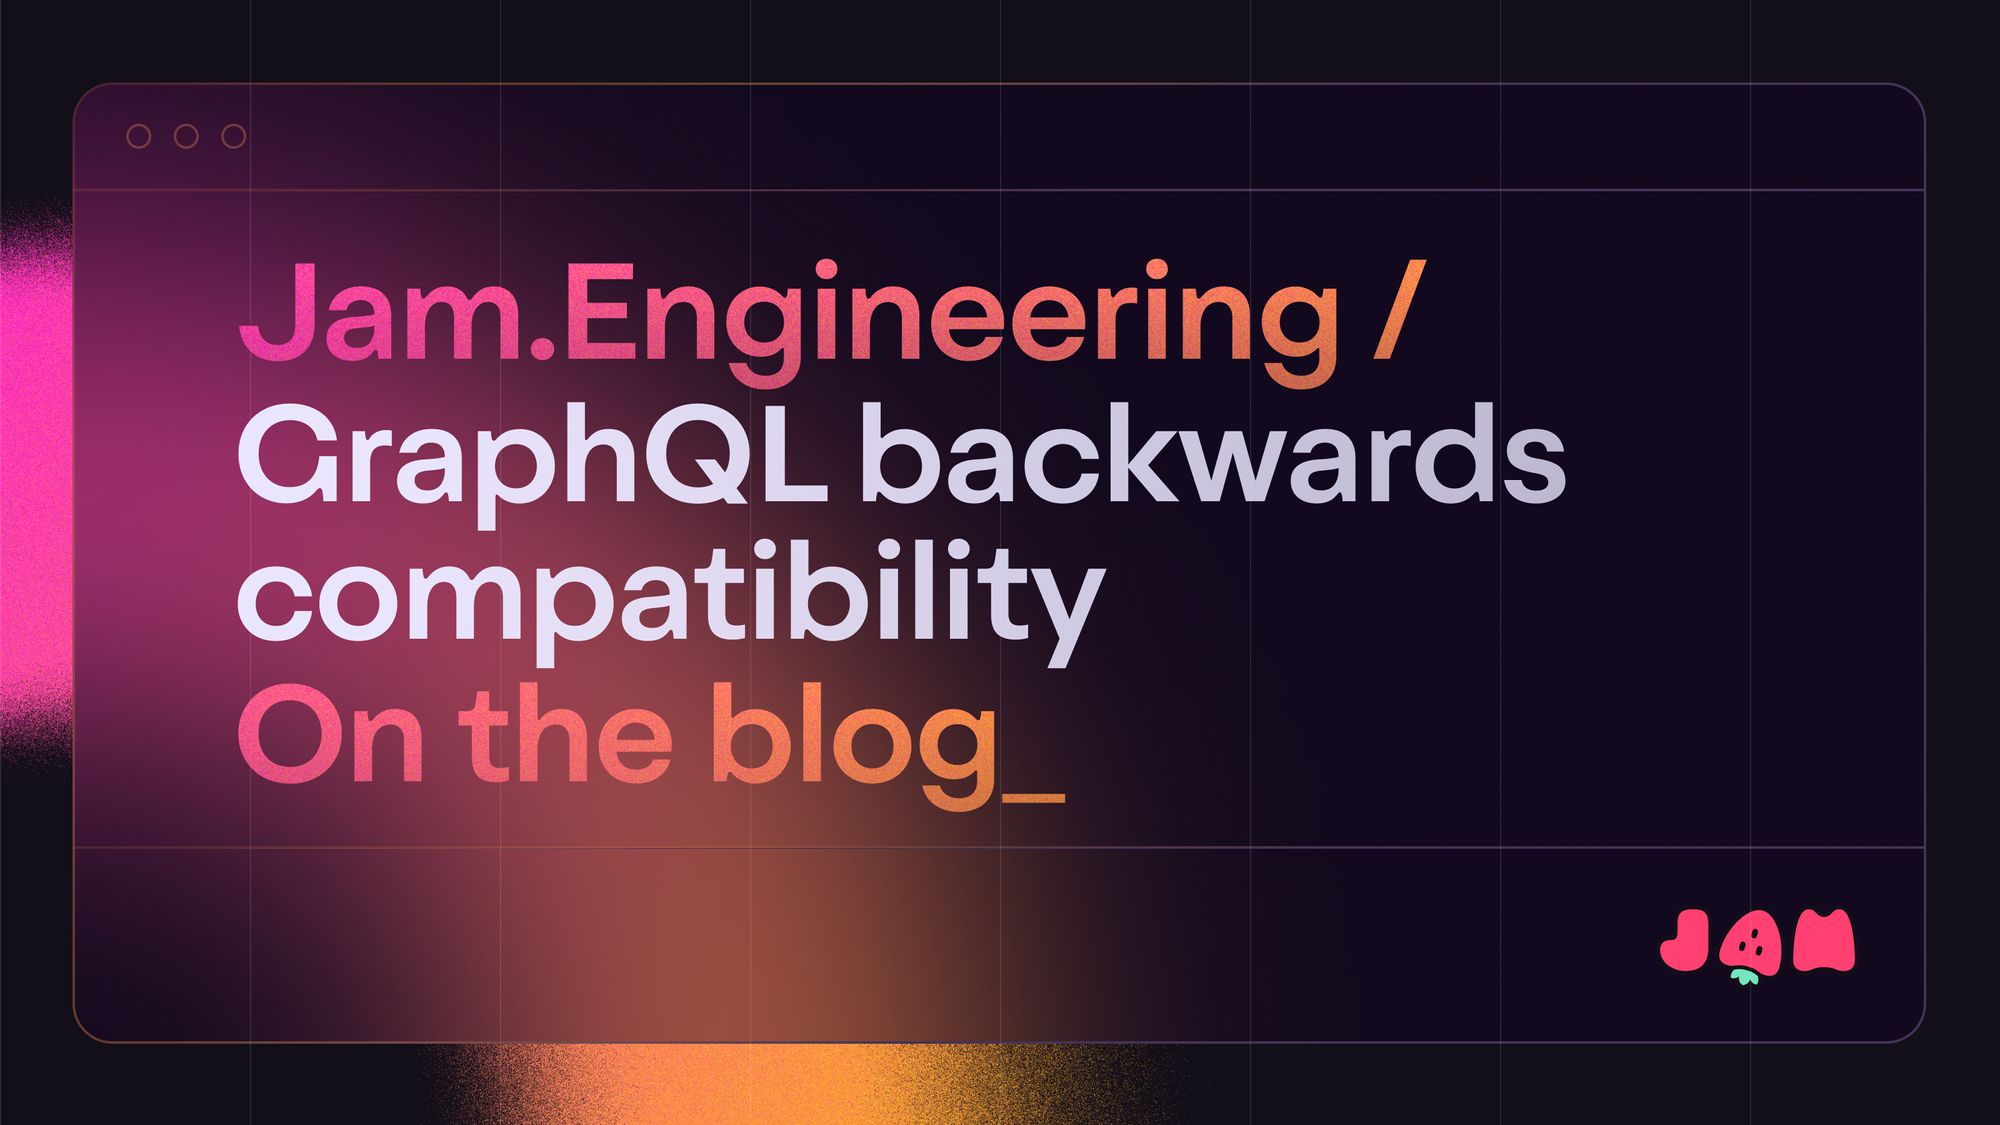 Navigating backwards compatibility in GraphQL